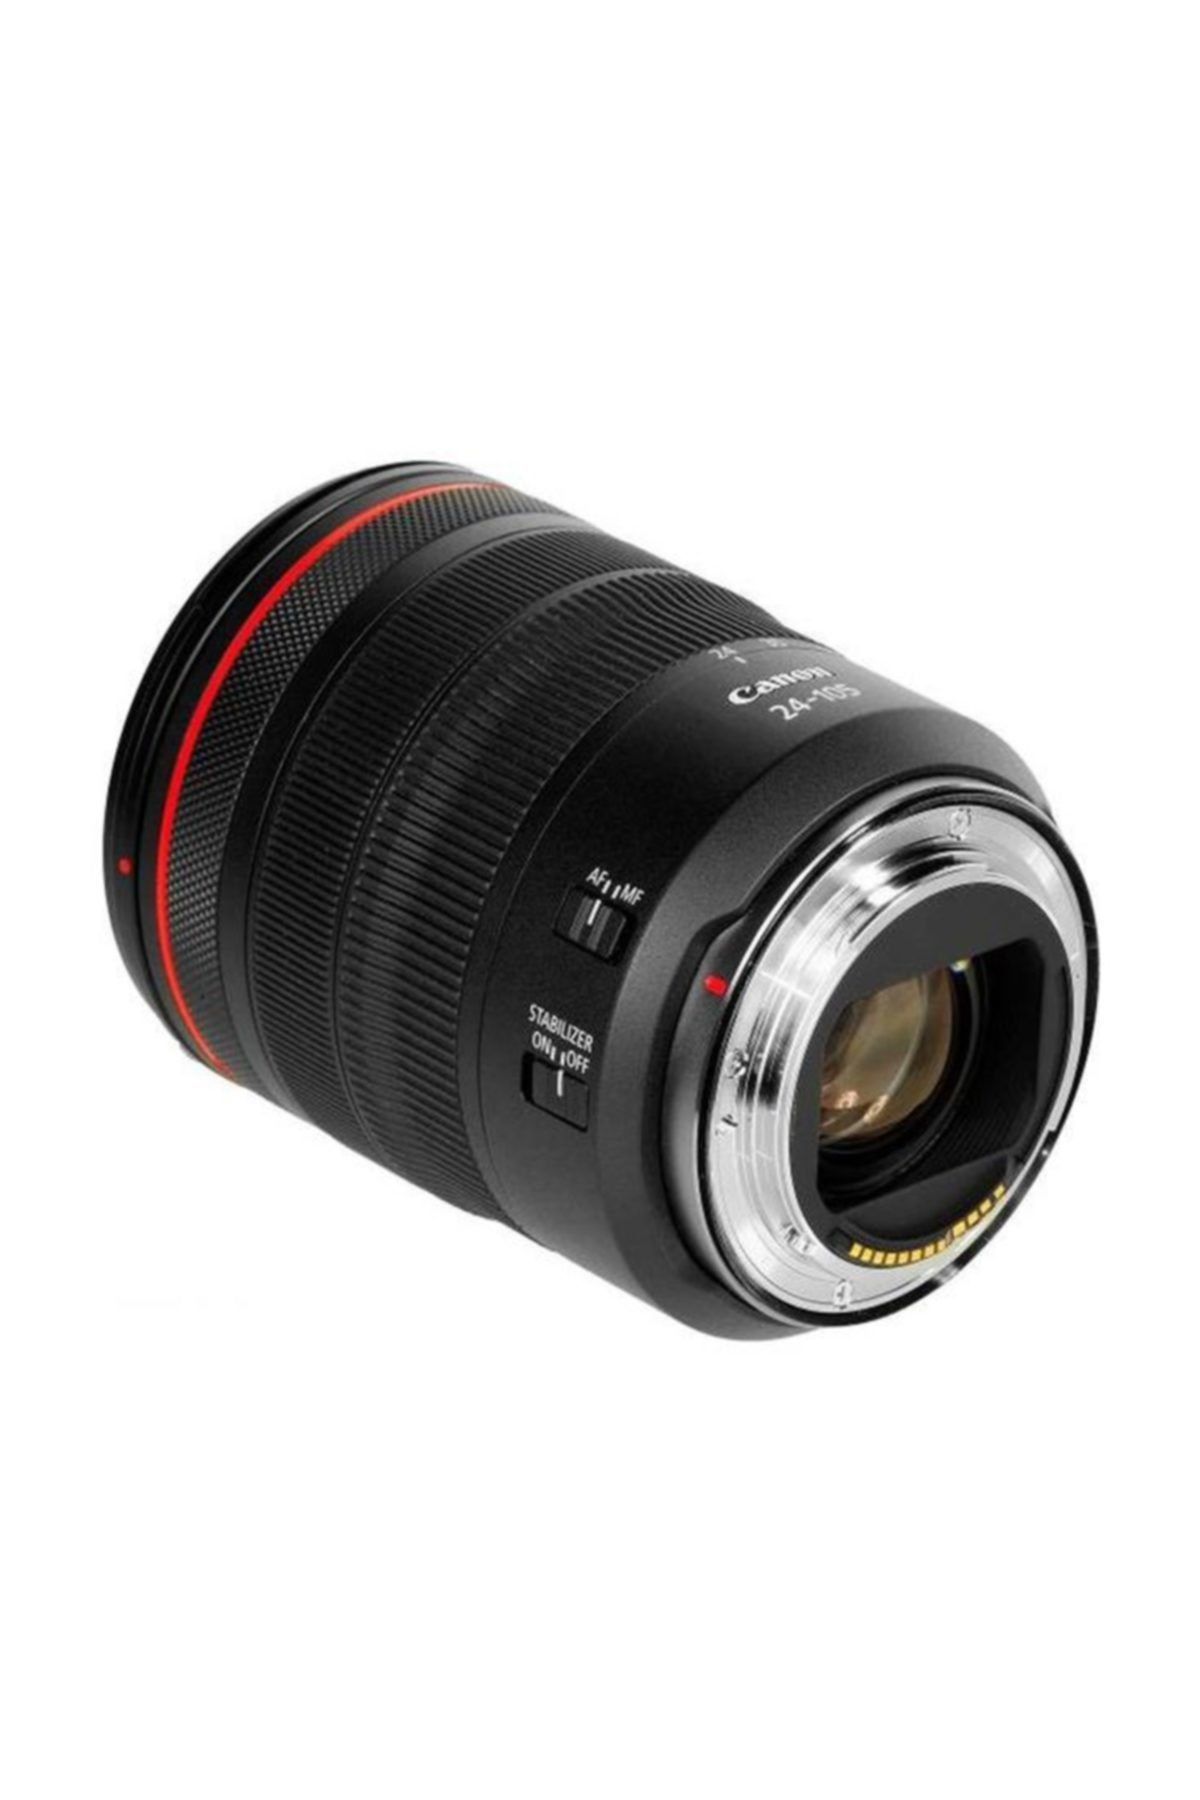 Canon Lens Rf24-105mm F/4 L Is Usm Eu26 - 2963c005aa